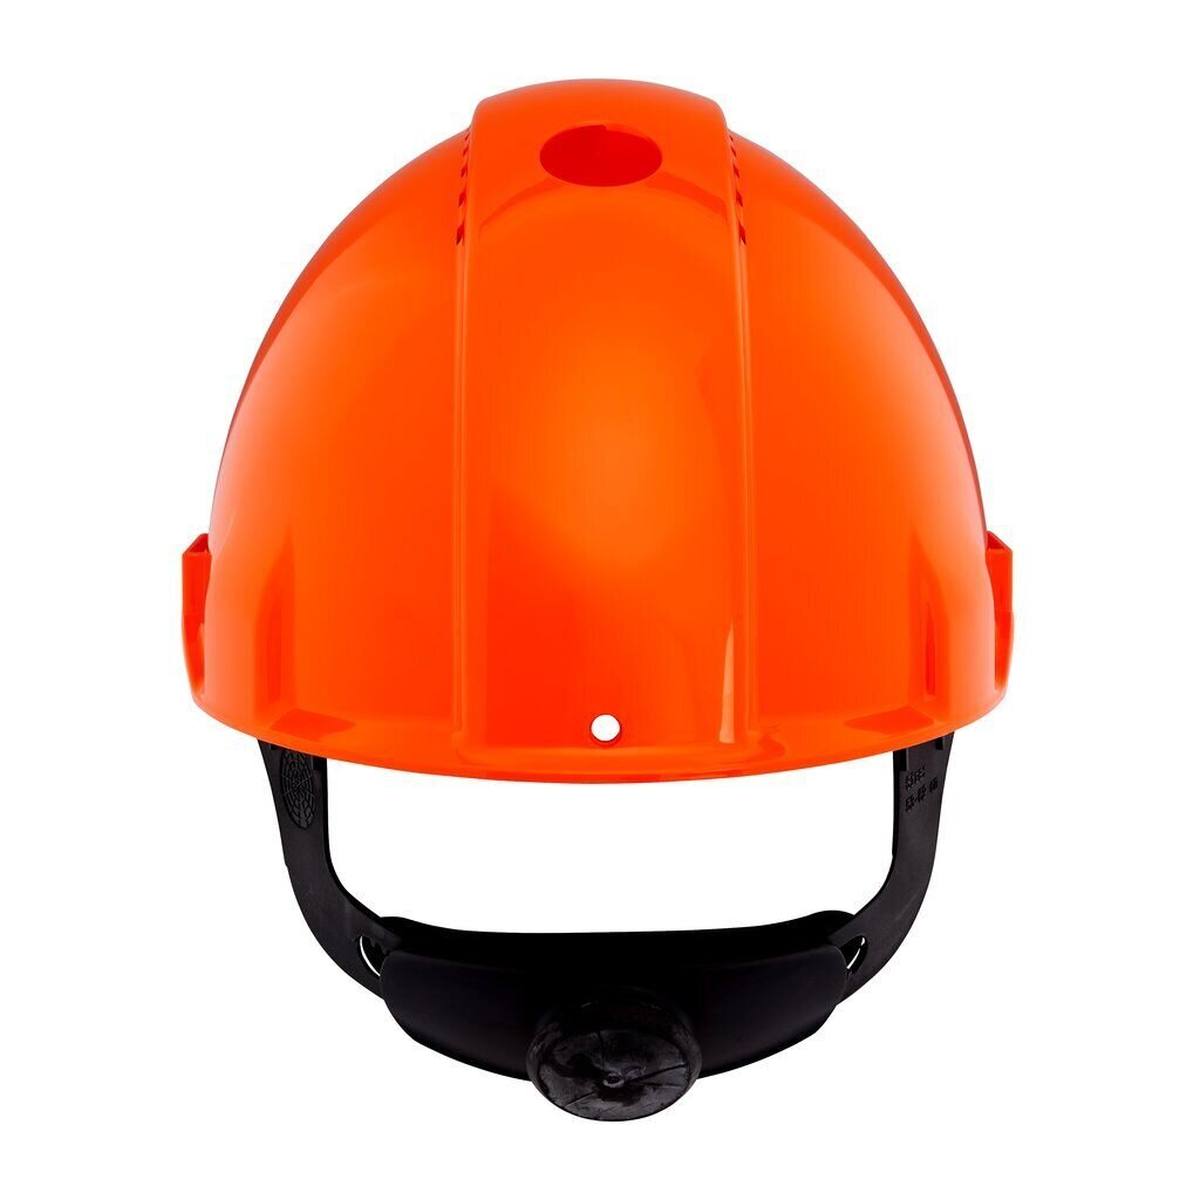 elmetto di sicurezza 3M G3000 G30NUO di colore arancione, ventilato, con uvicatore, cricchetto e cinturino in plastica per saldatura